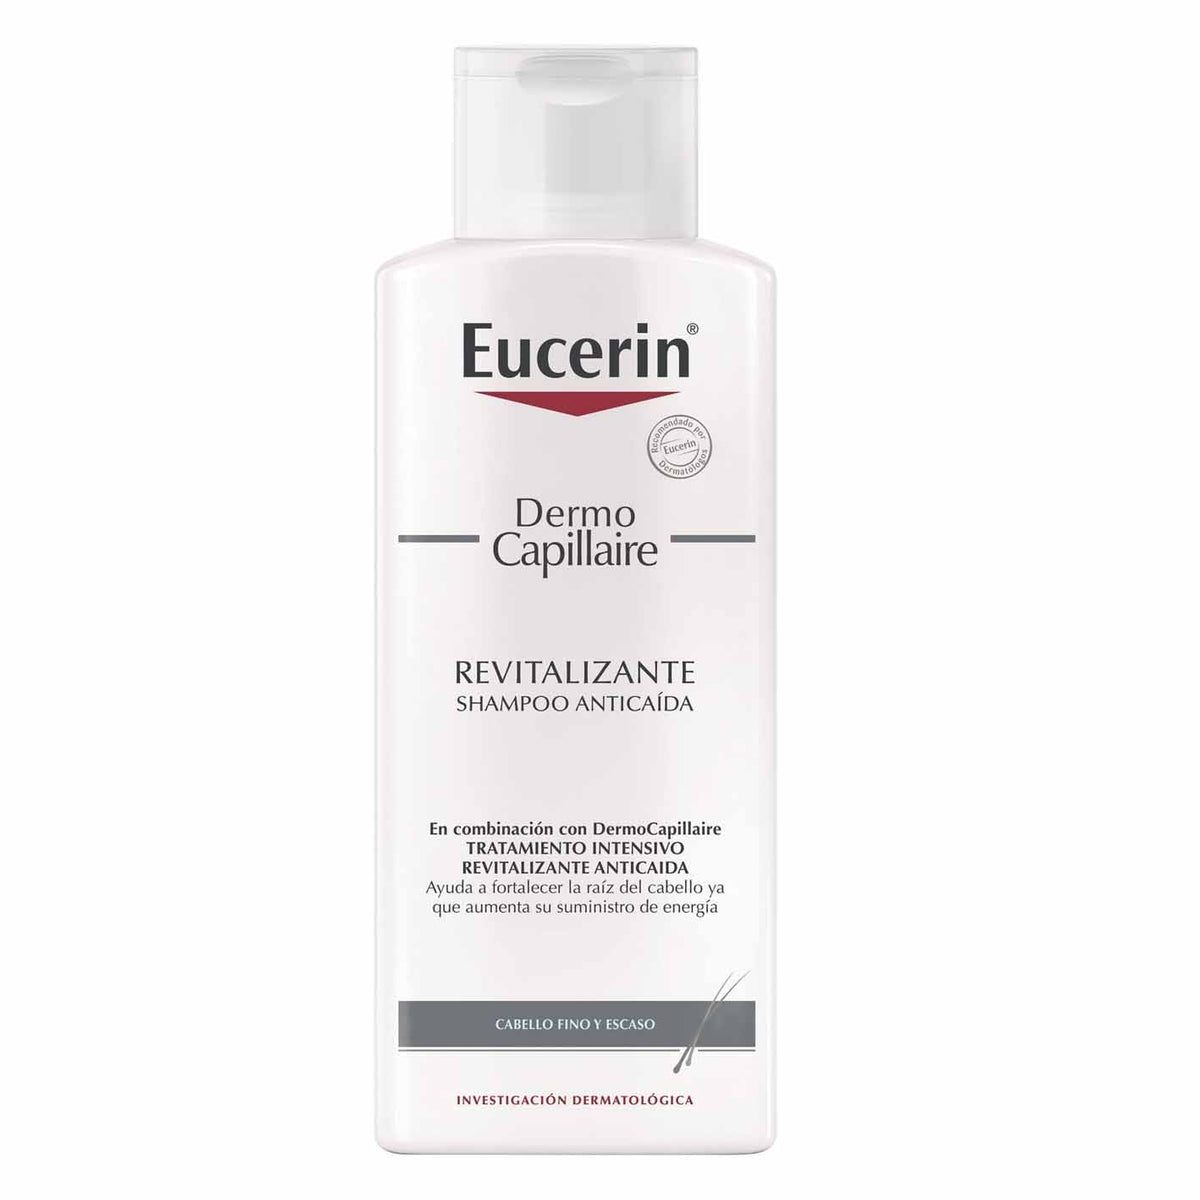 Eucerin Dermo Capillaire Shampoo Revitalizante Anti-Caida